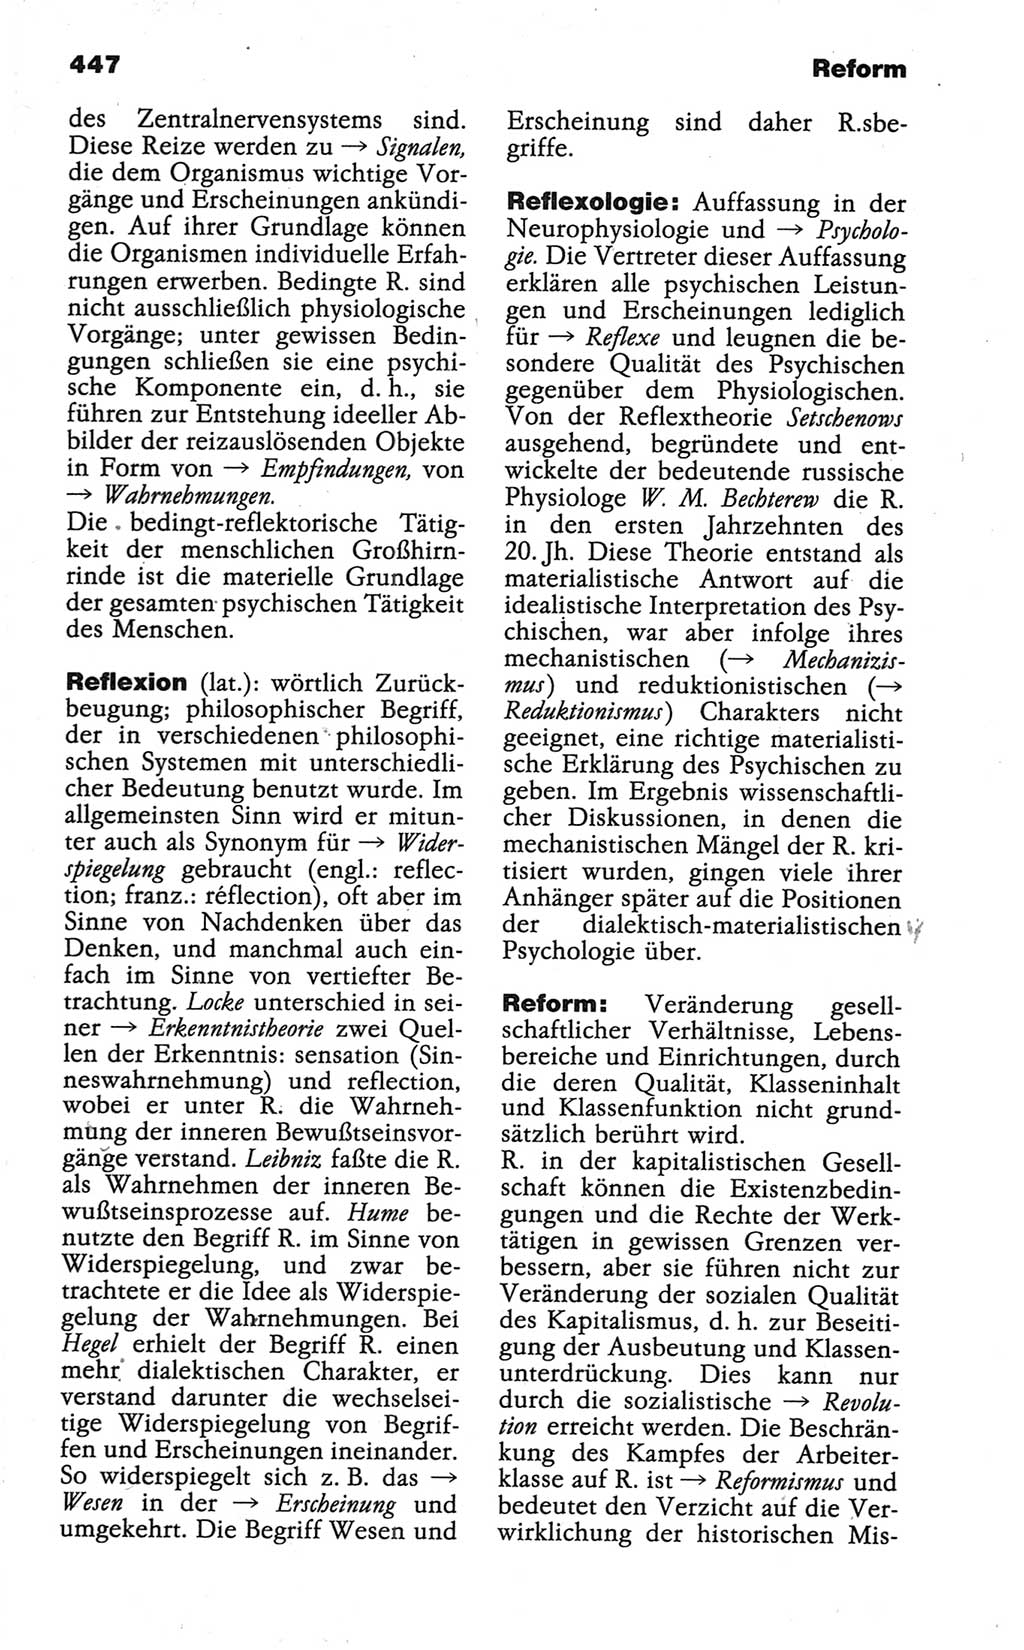 Wörterbuch der marxistisch-leninistischen Philosophie [Deutsche Demokratische Republik (DDR)] 1986, Seite 447 (Wb. ML Phil. DDR 1986, S. 447)